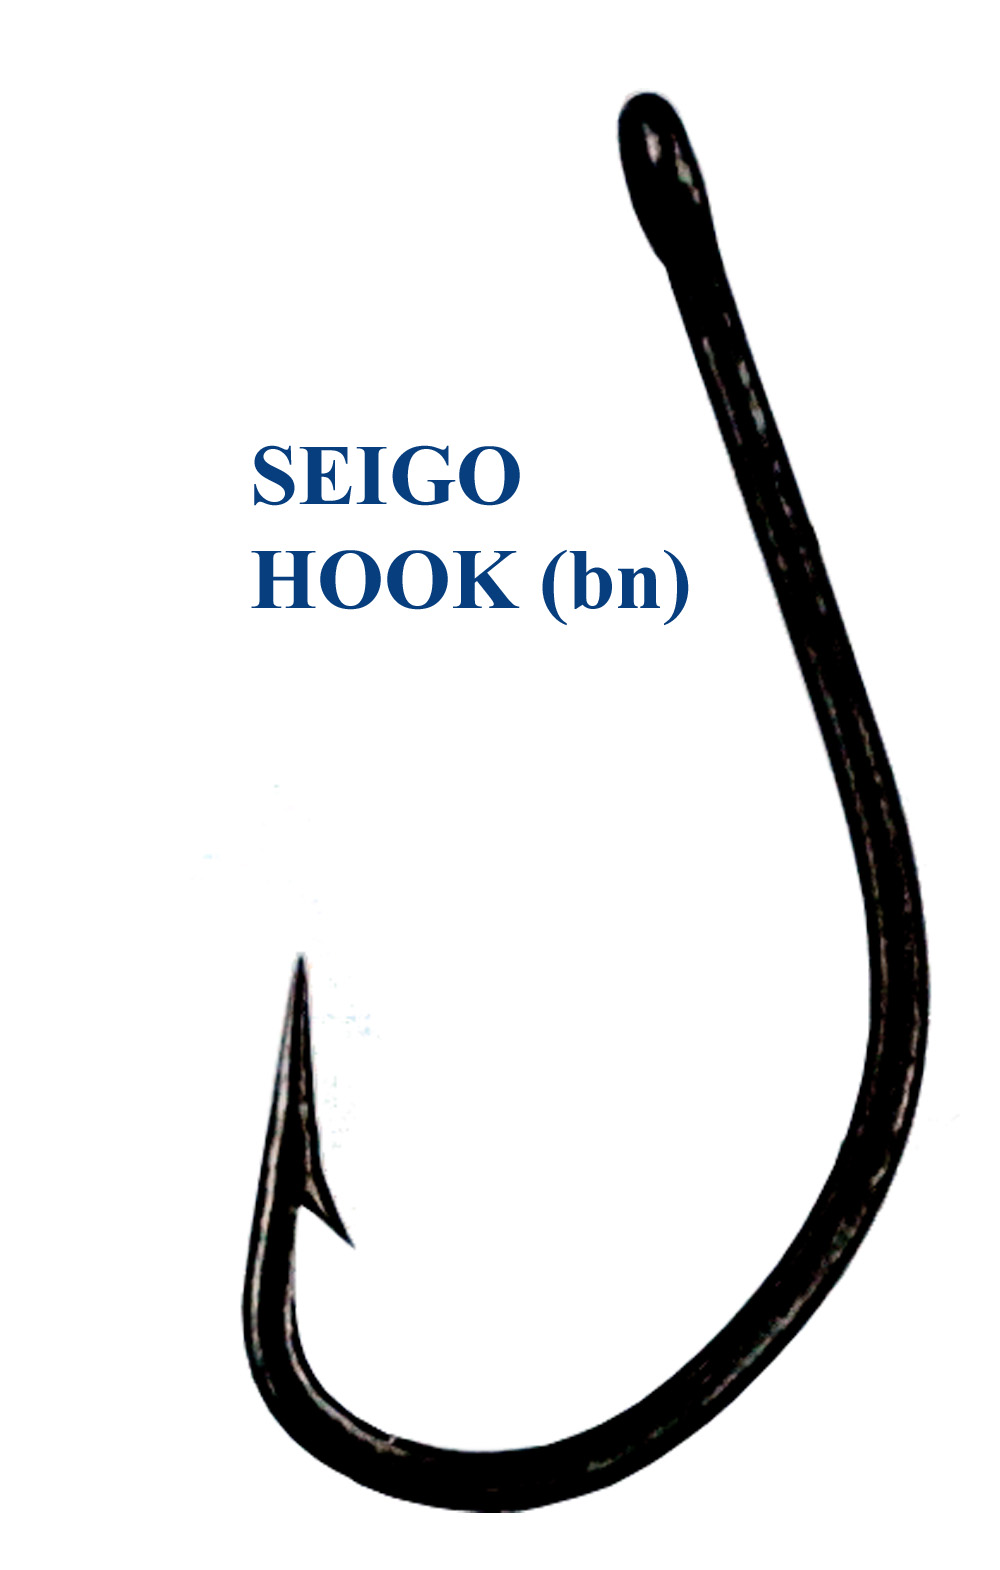 SEIGO HOOK